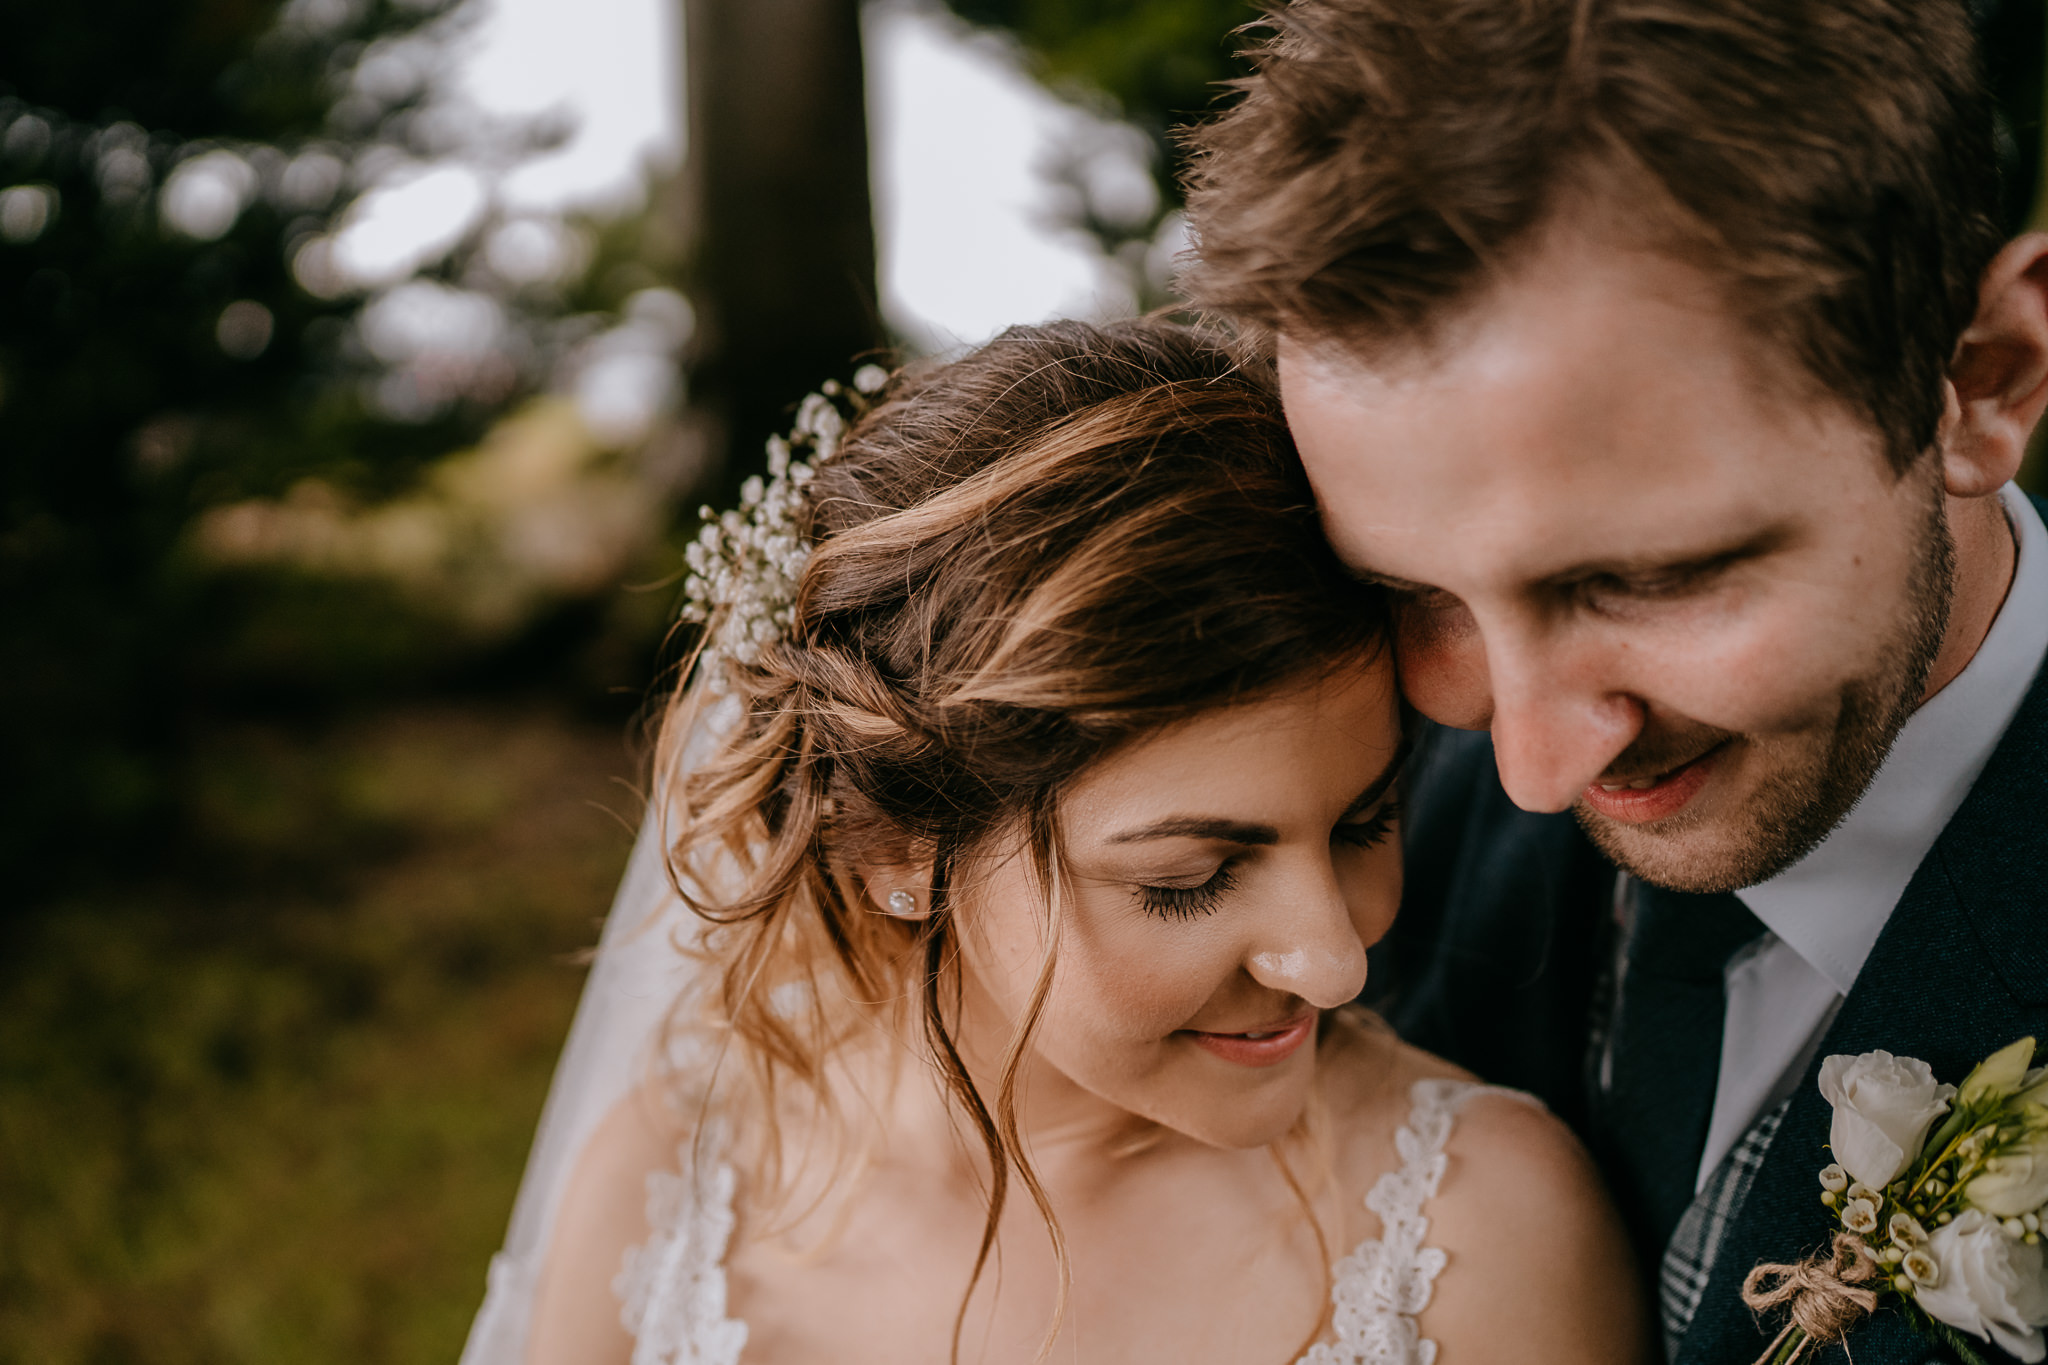  beautiful moment between bride and groom in secret garden Northern Ireland wedding photographers 